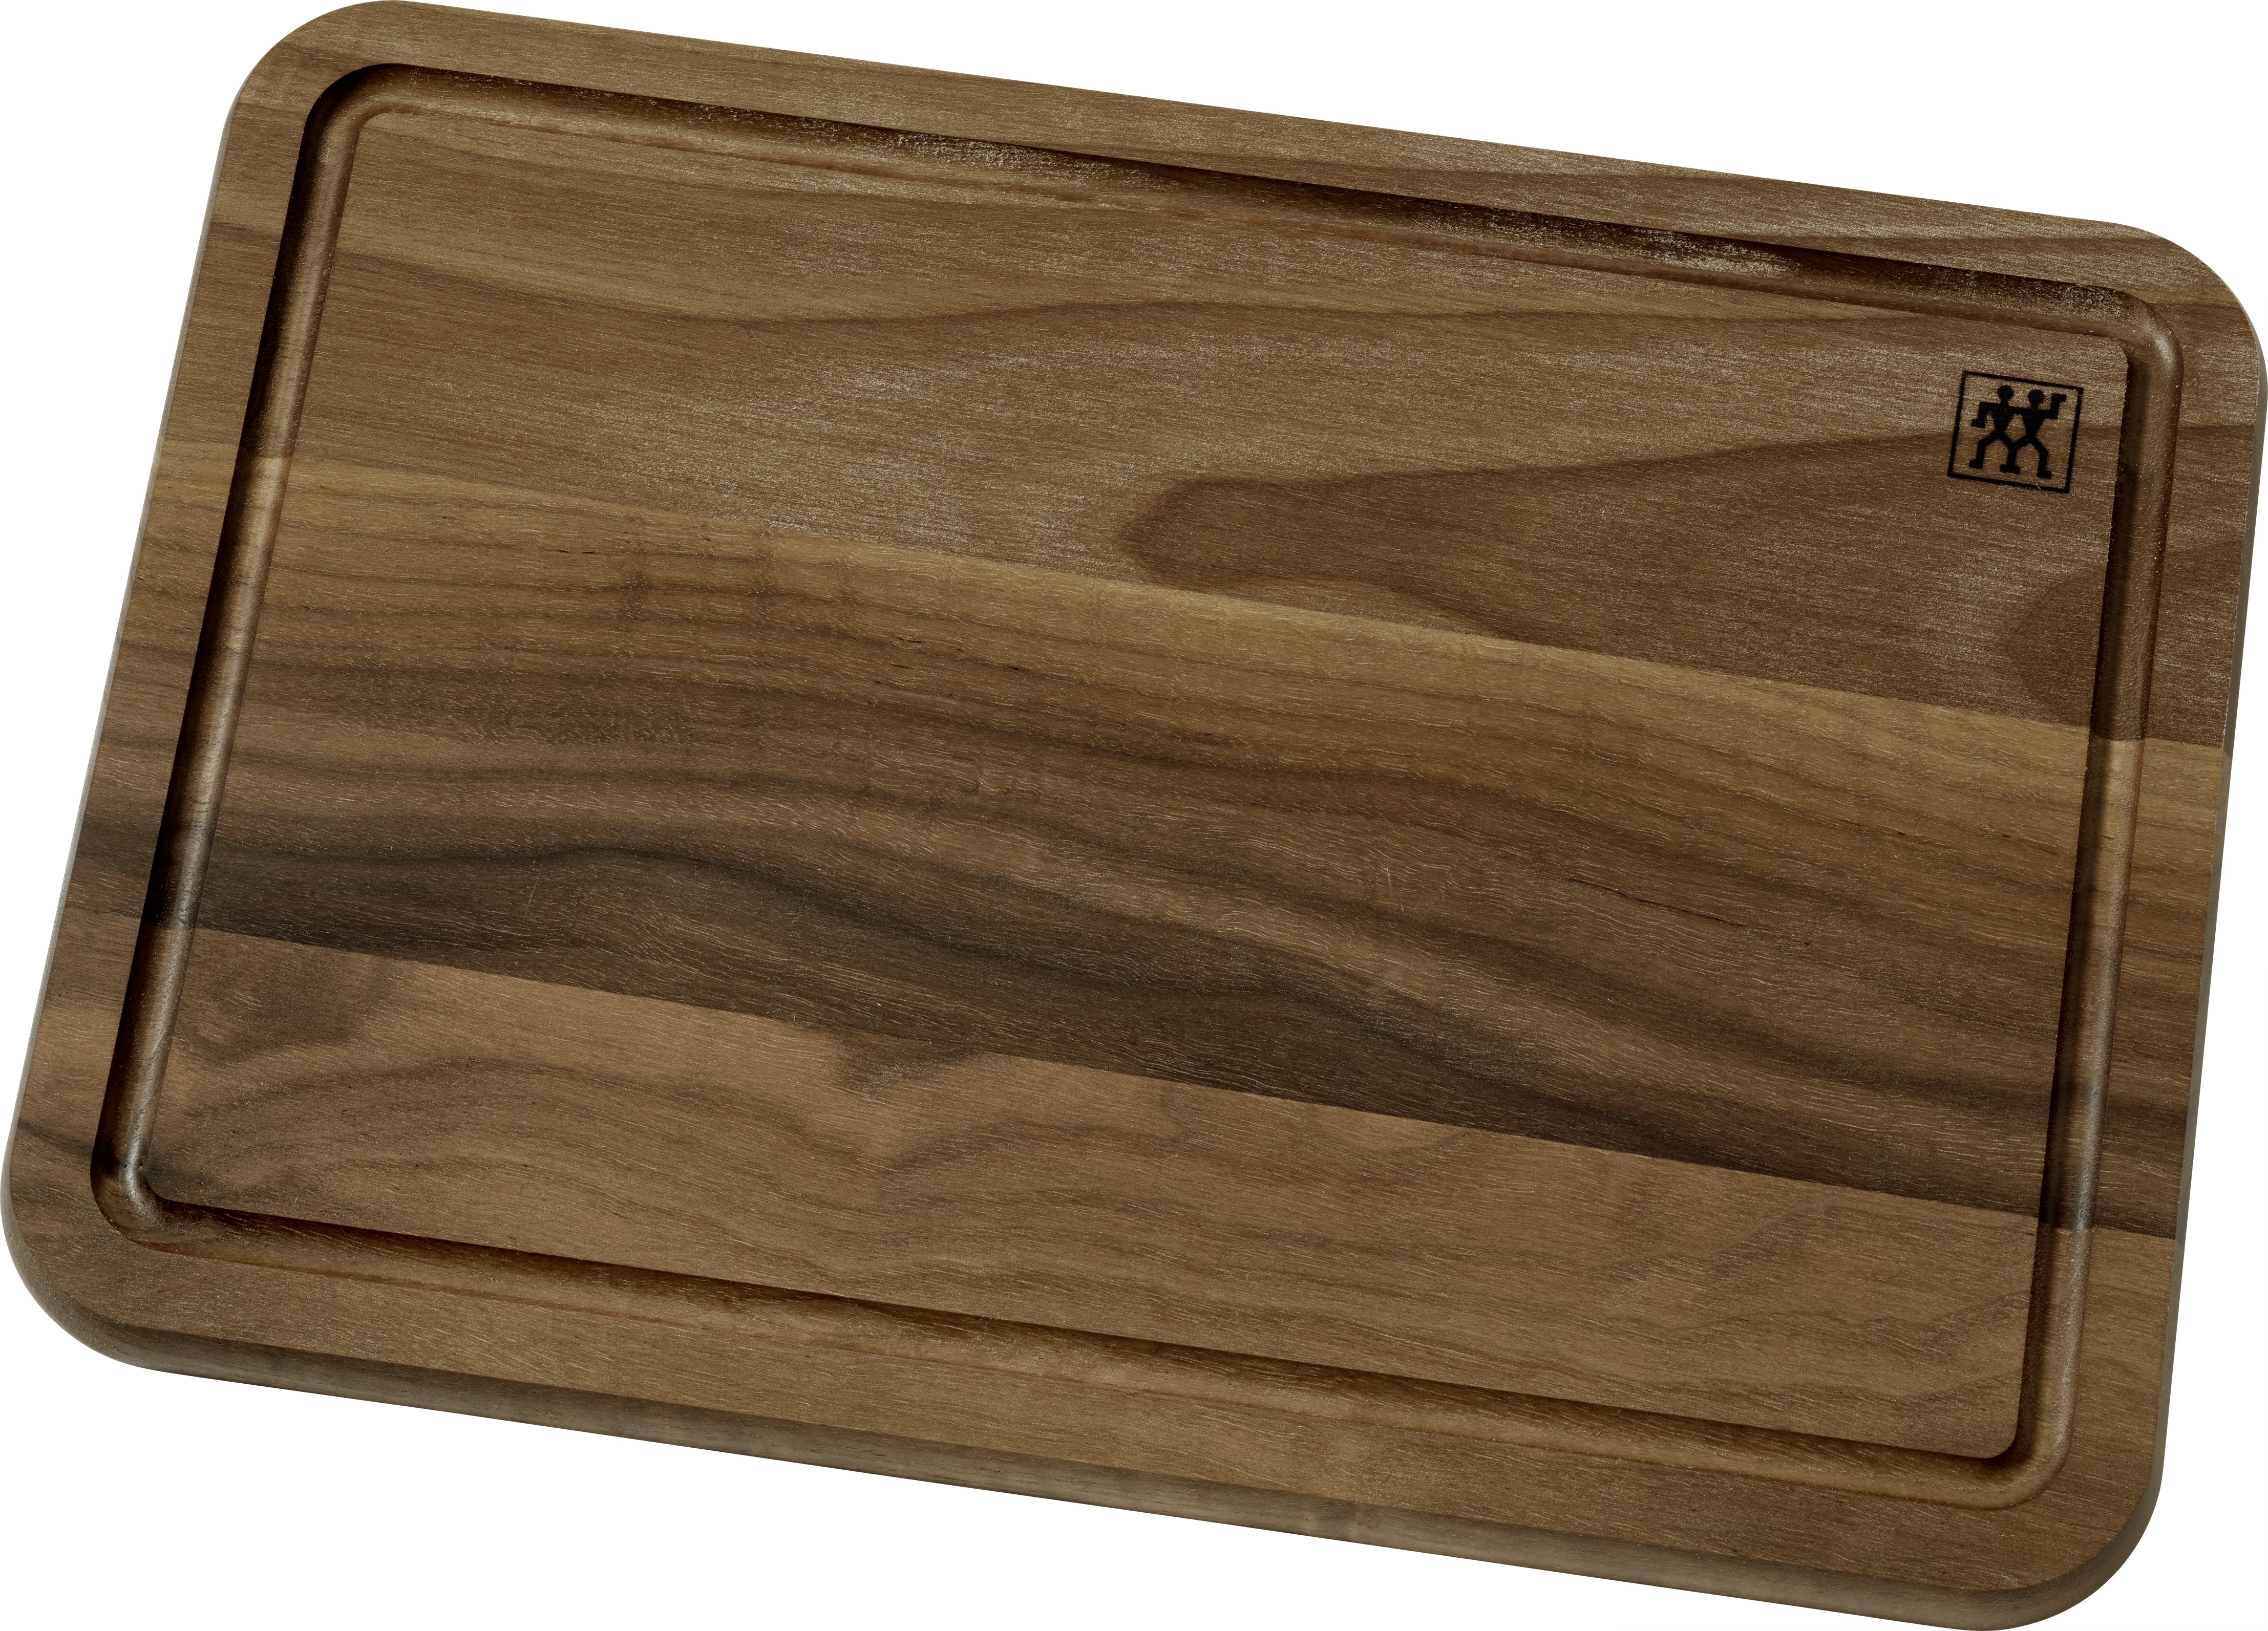 Online-Shop - Buy Zwilling Cutting Board, walnut wood,  35x25x2cm